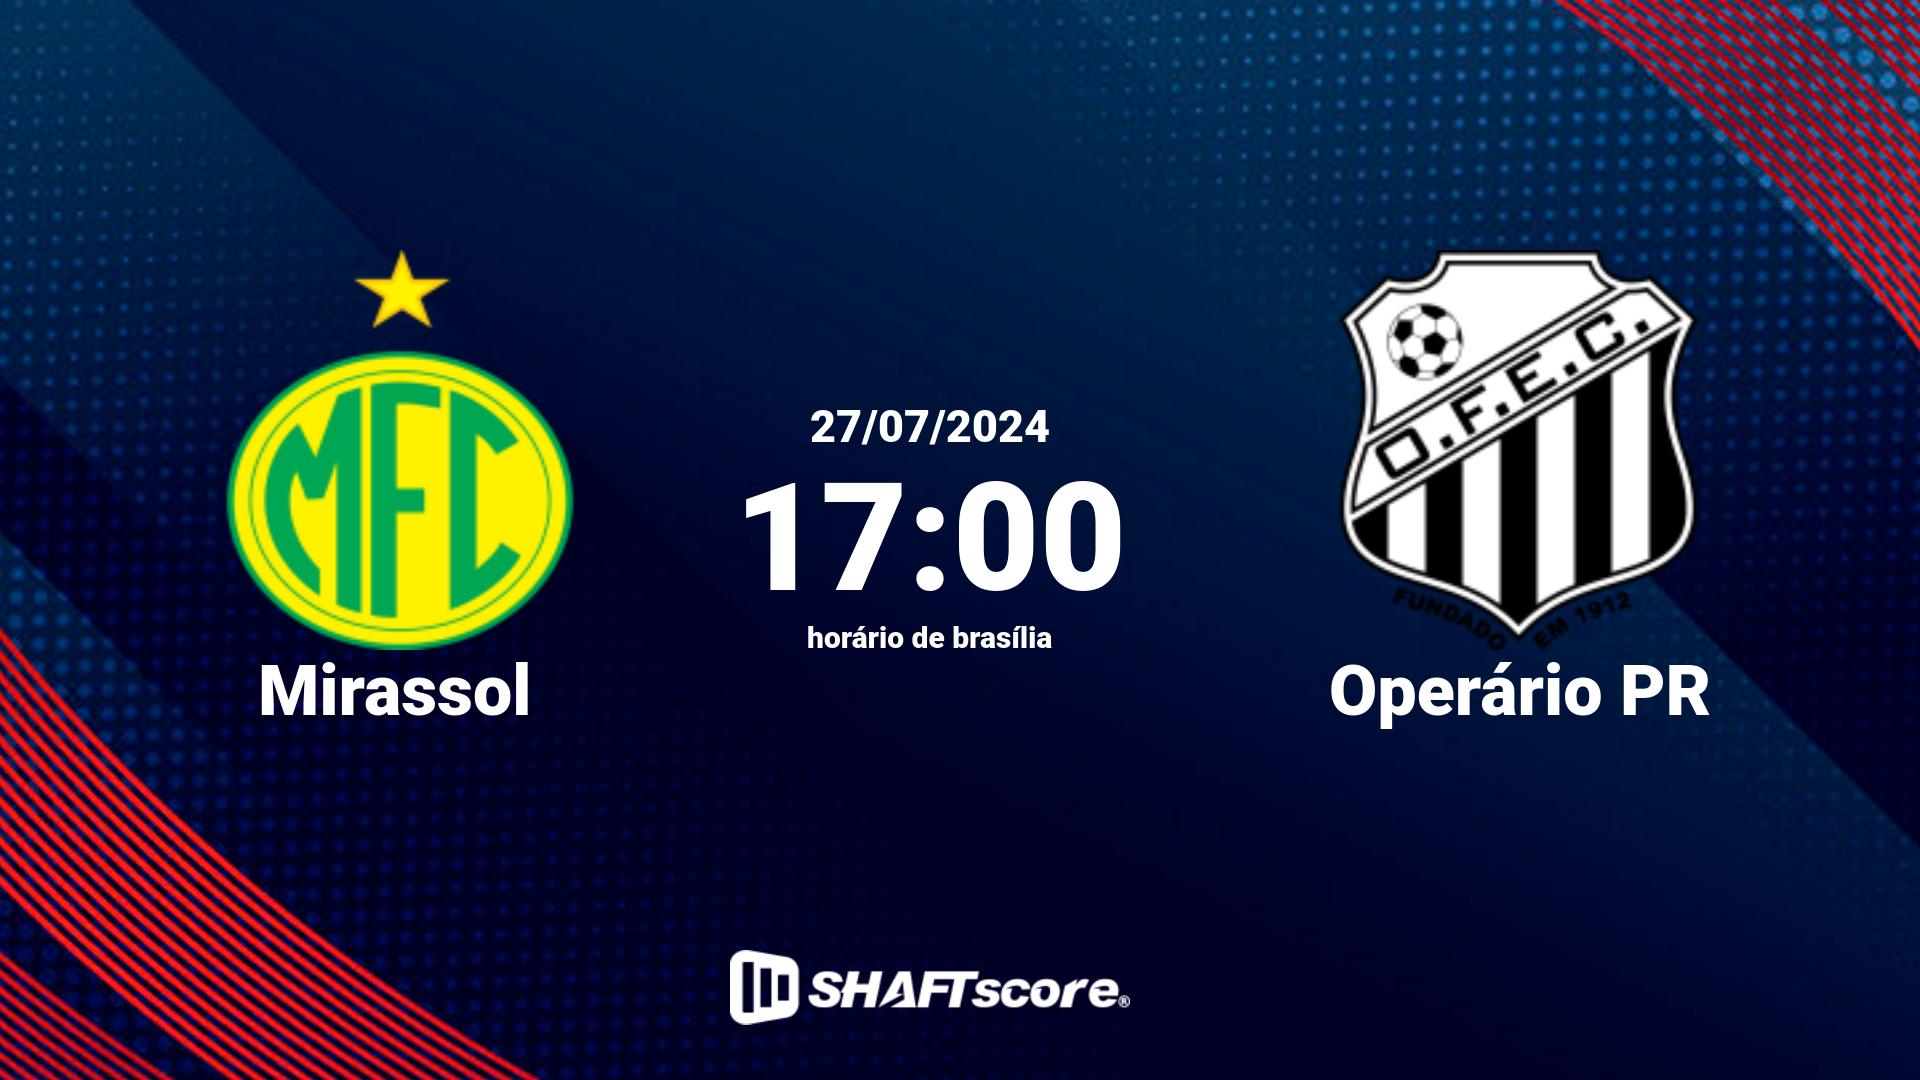 Estatísticas do jogo Mirassol vs Operário PR 27.07 17:00